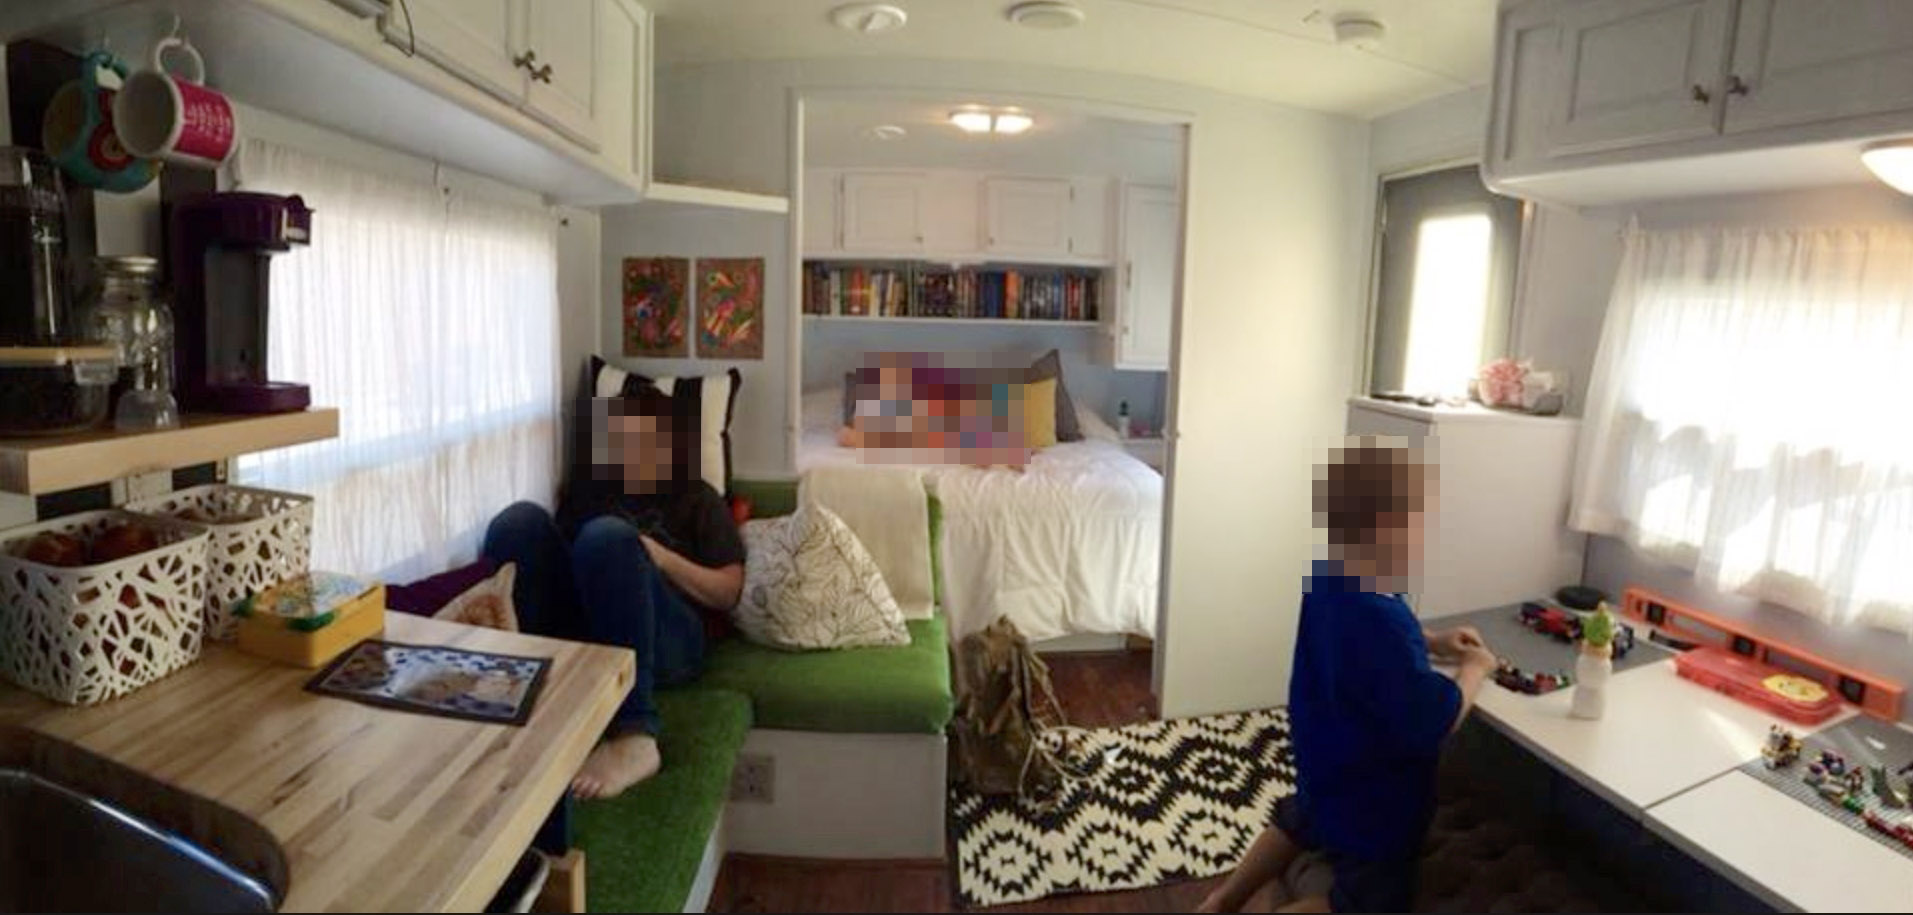 La propriétaire vit dans la caravane de 230 pieds carrés avec sa famille de six personnes